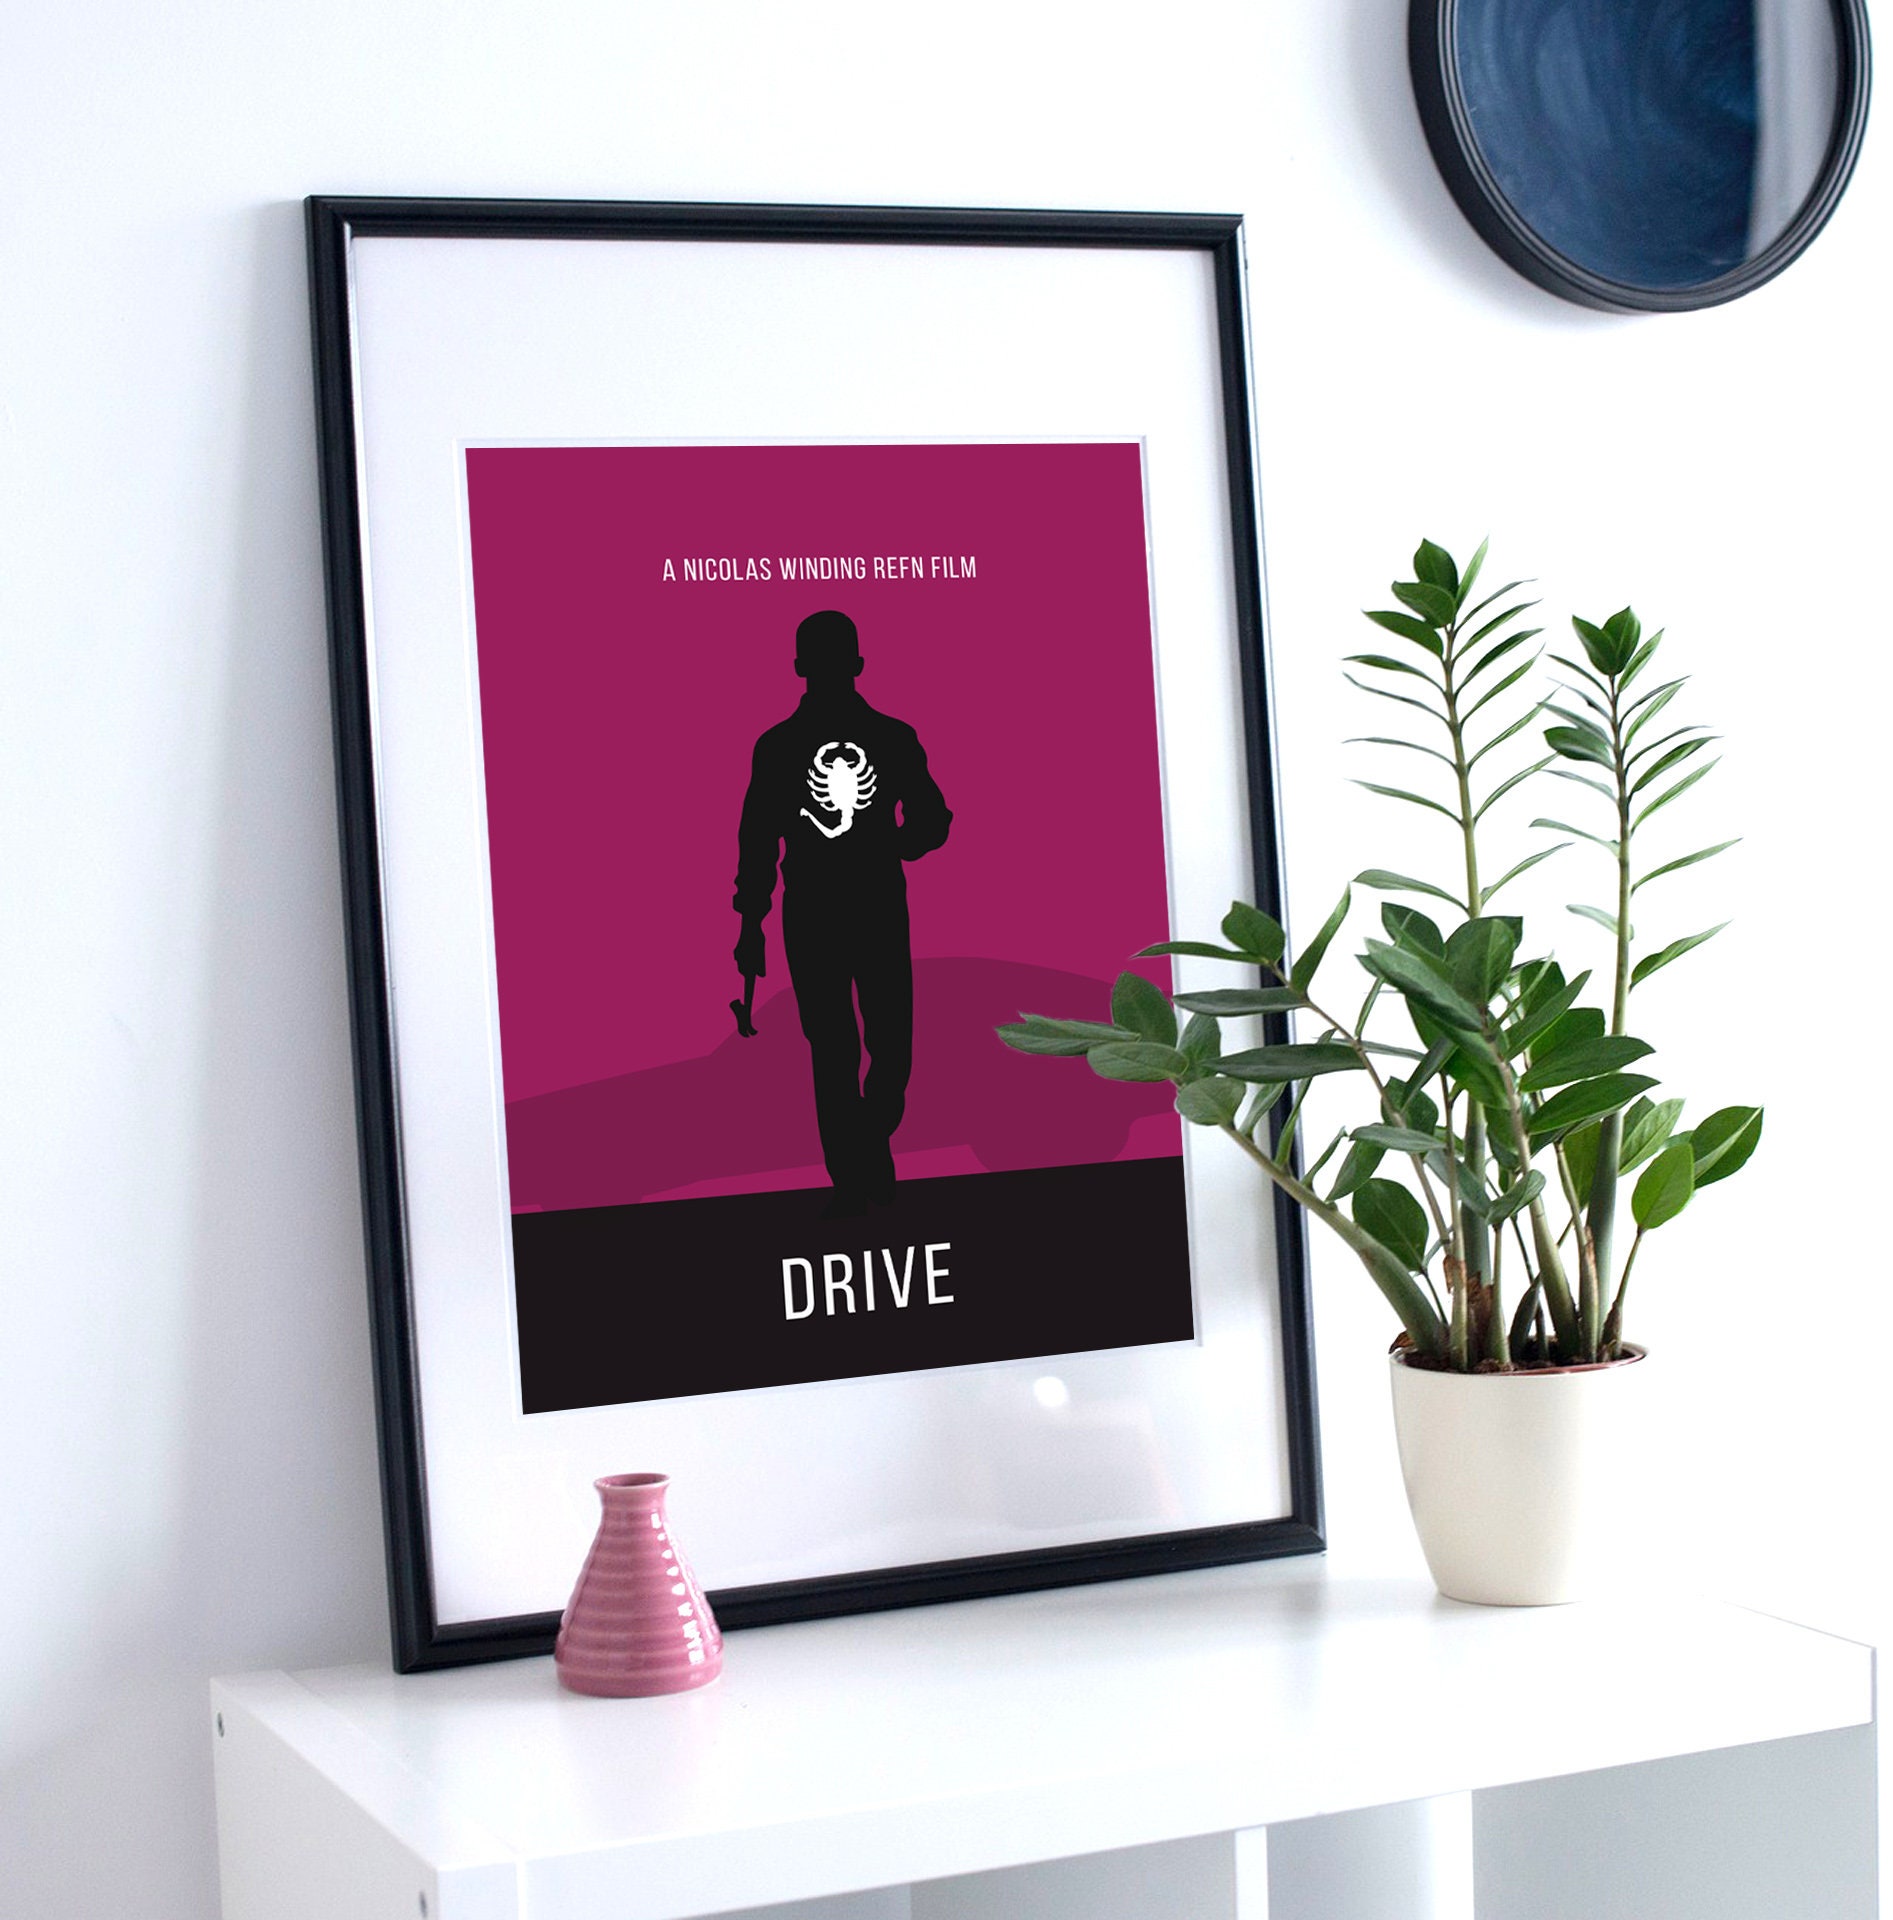 Affiche de film Drive personnalisée Art personnalisé Disponible sous forme  d'affiche, de toile ou uniquement de fichier numérique -  France